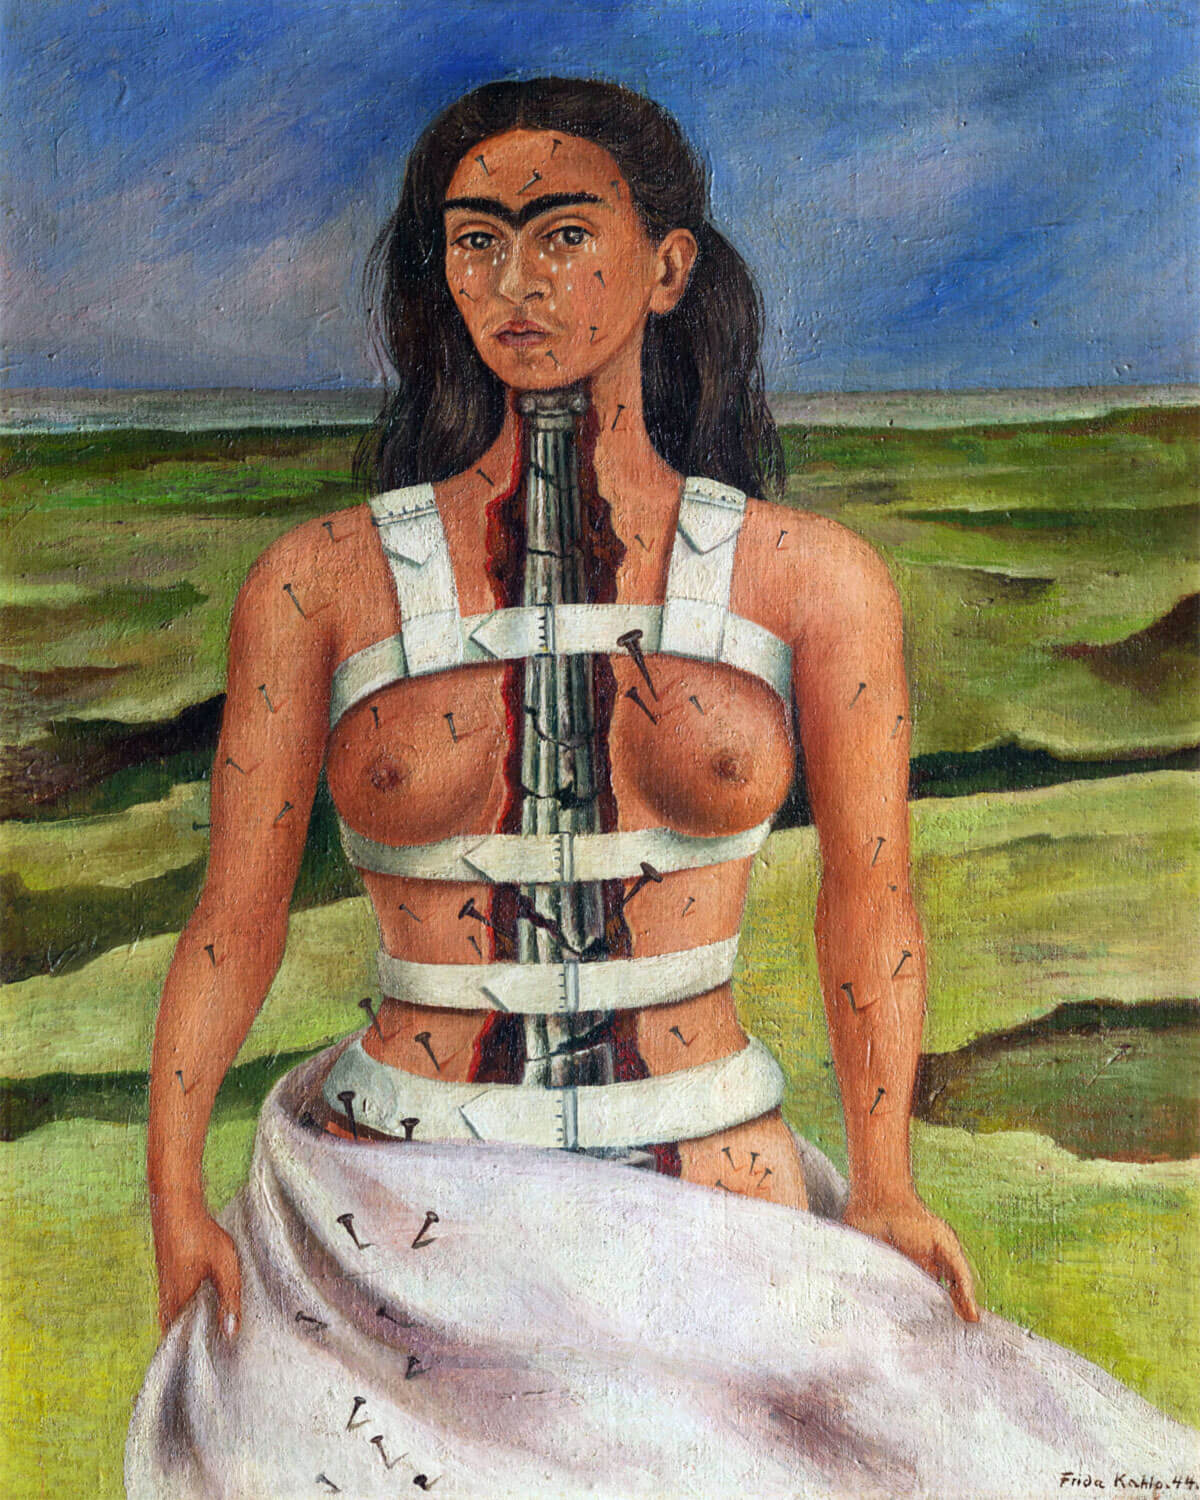 La femminilità brutale di Frida Kahlo: manifesto di un corpo - frida kahlo 2 - Gay.it